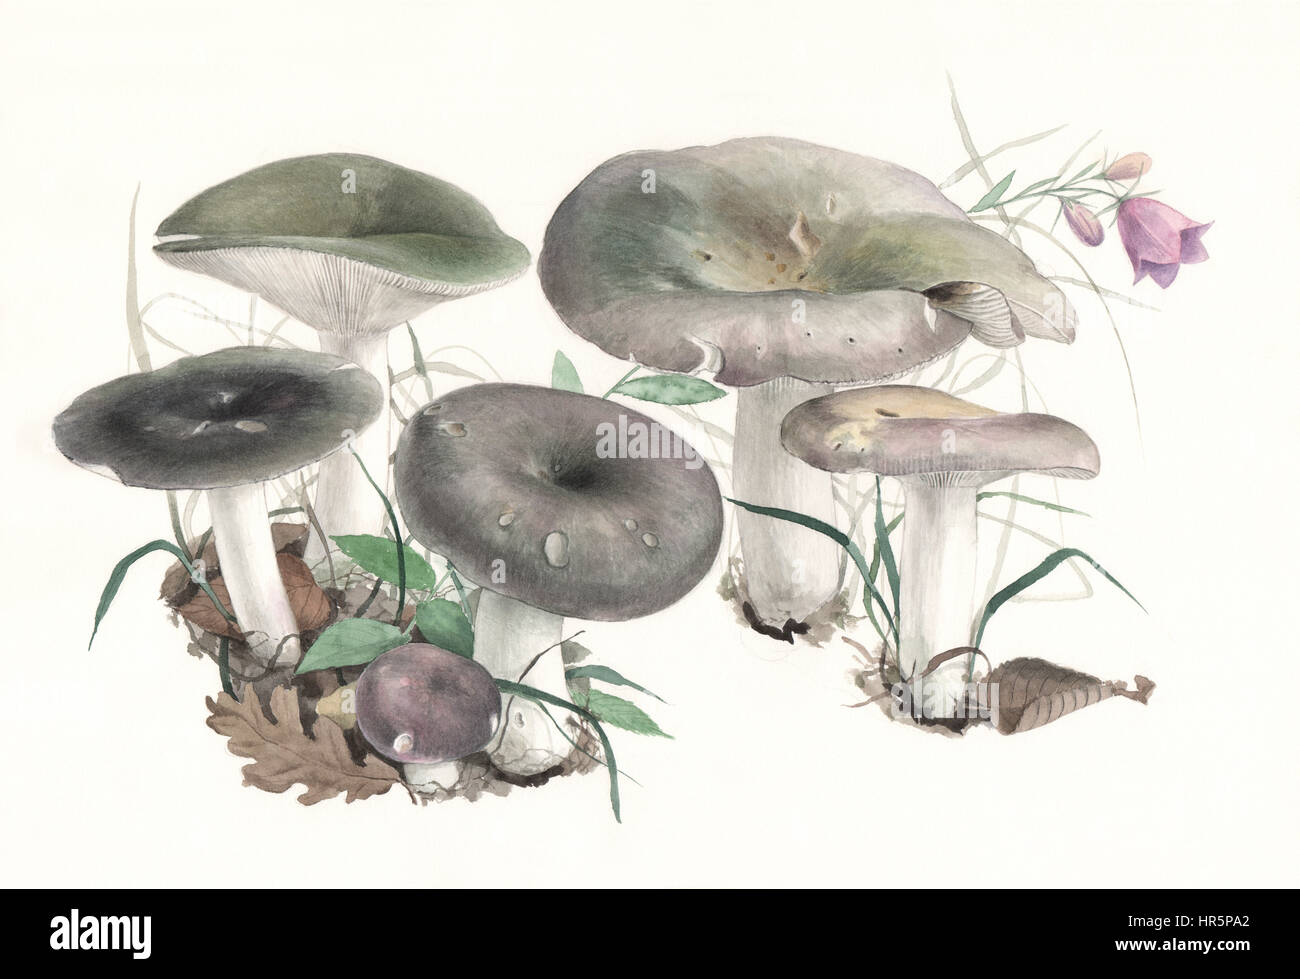 Pilze ubling Cyanoxantha. Handgemaltes Aquarell Abbildung von Waldpilzen im natürlichen Kontext, Wollweiß Hintergrund. Stockfoto